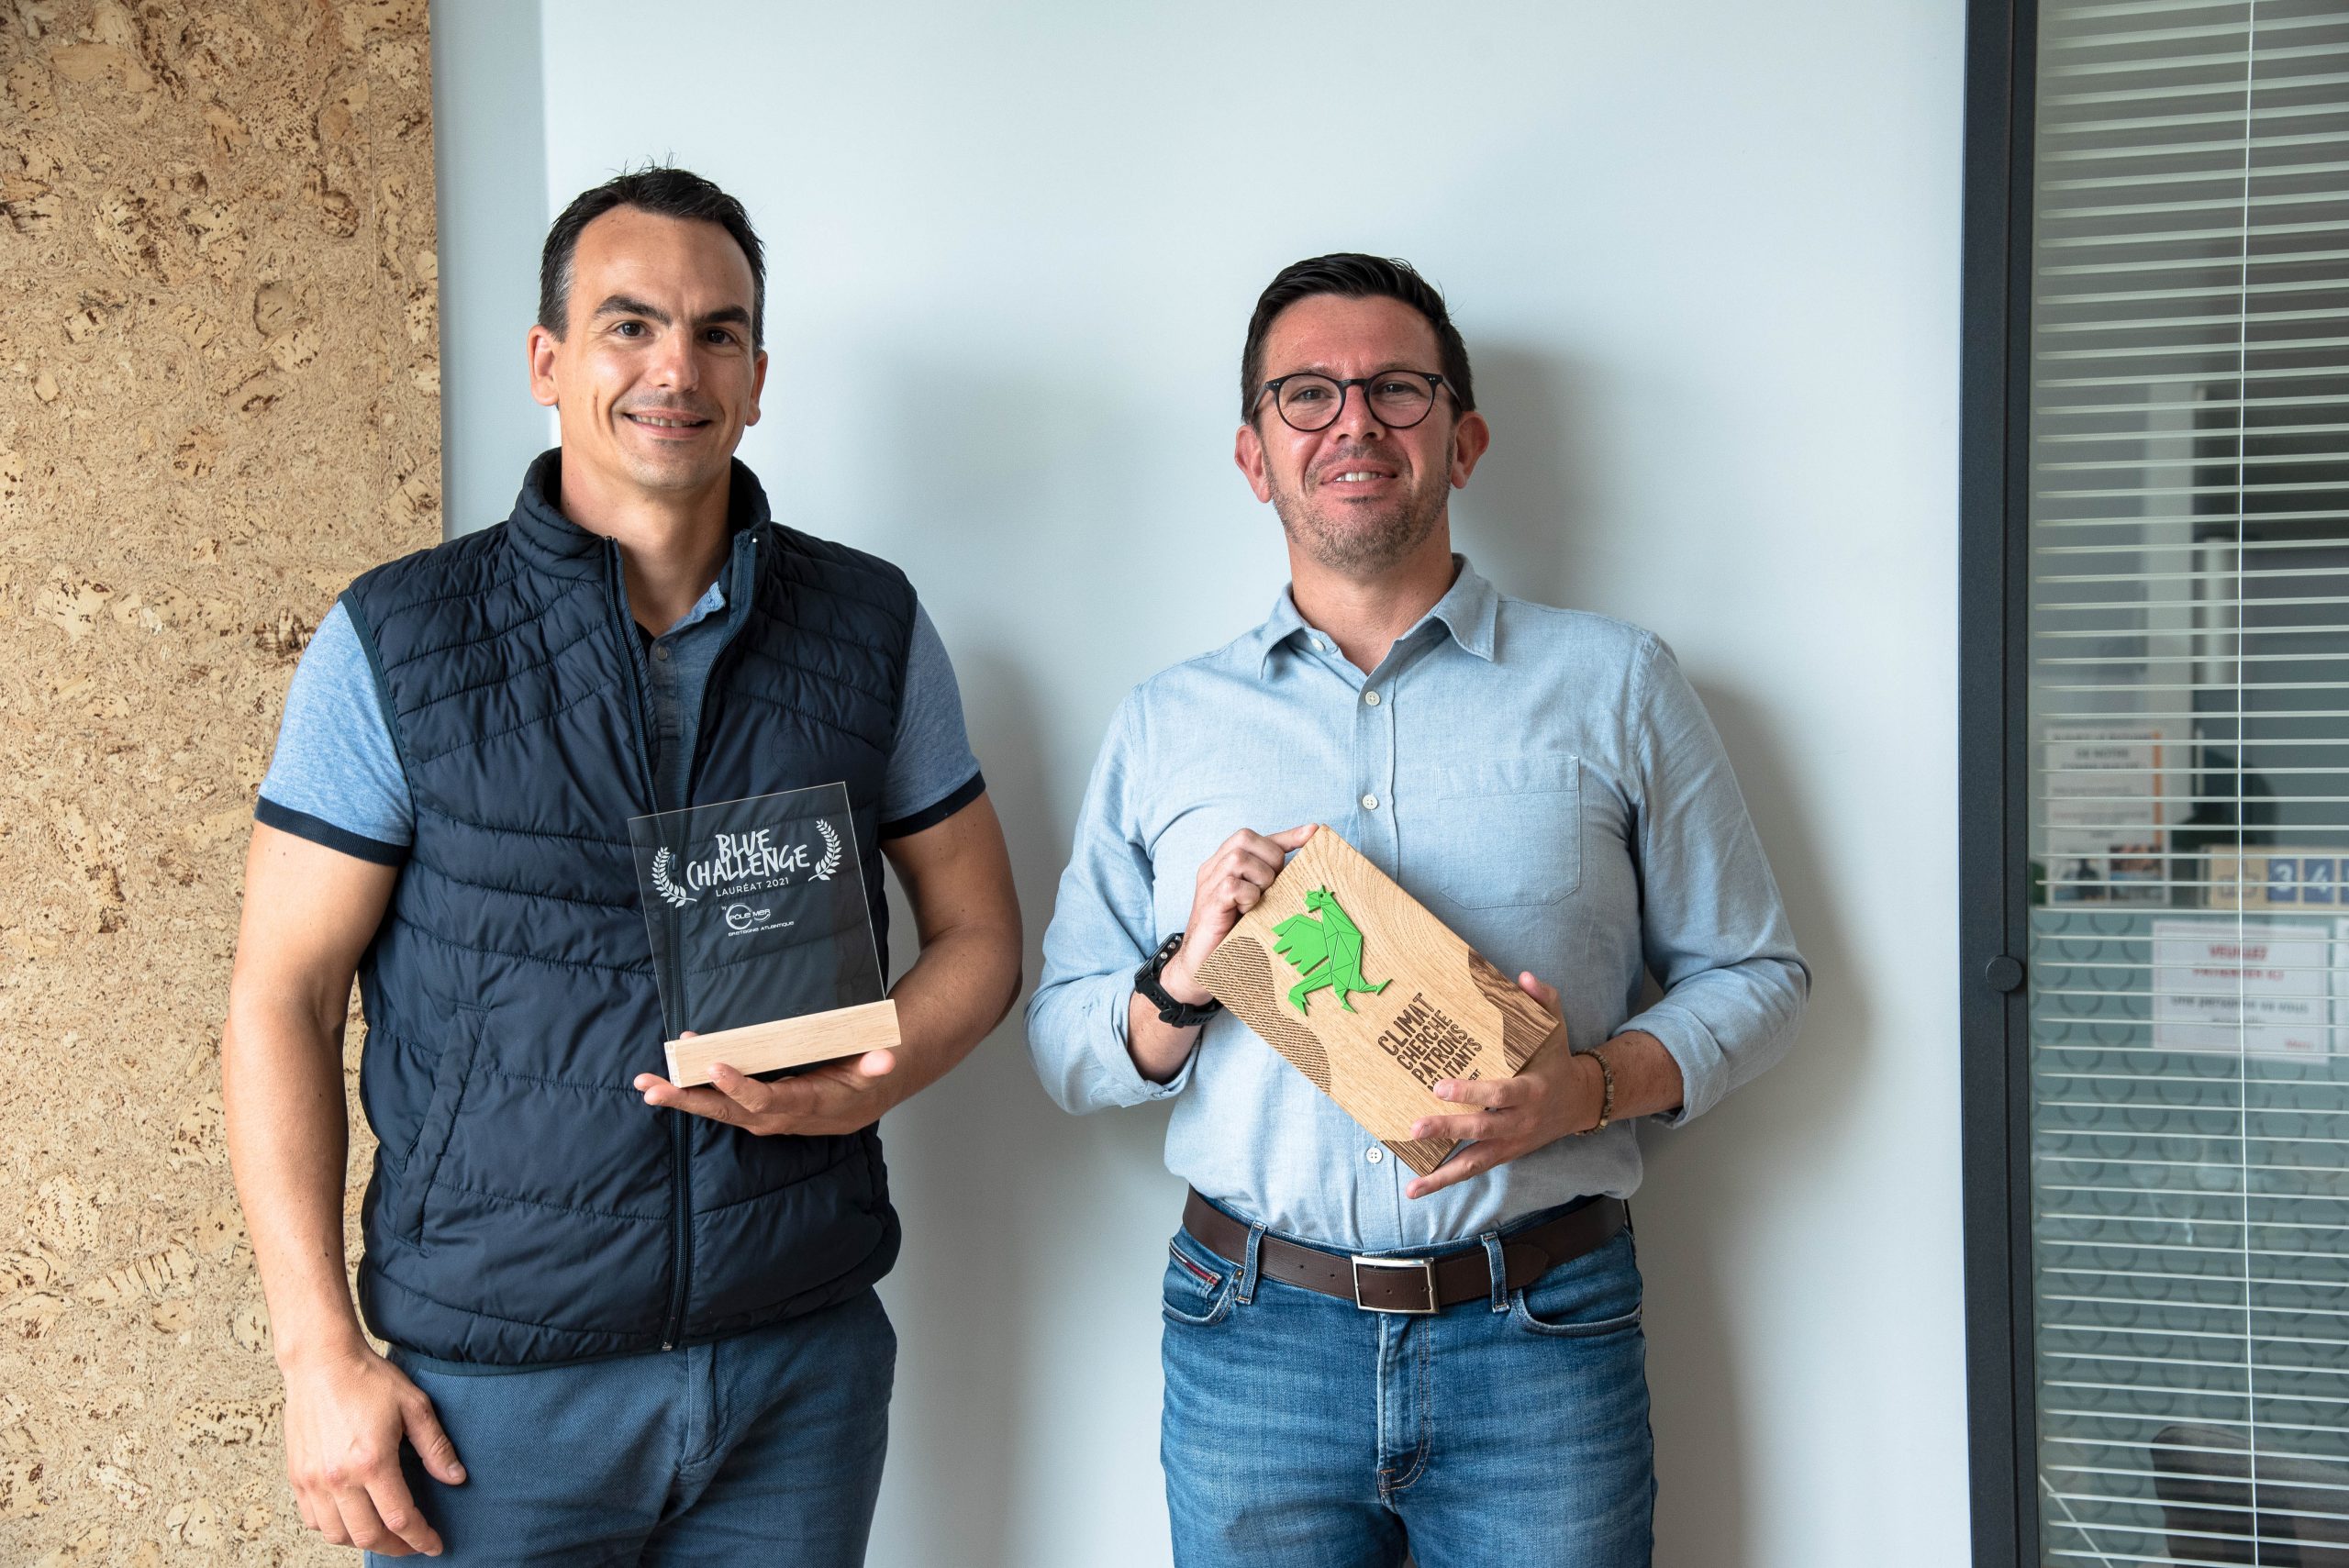 Alexandre Thévenot, responsable du projet Kerbone et de l’activité co-produits, avec le prix Blue Challenge, et Christophe Le Bihan, DG, ambassadeur pour le climat à travers le label Coq Vert, lancé par BPI France. 